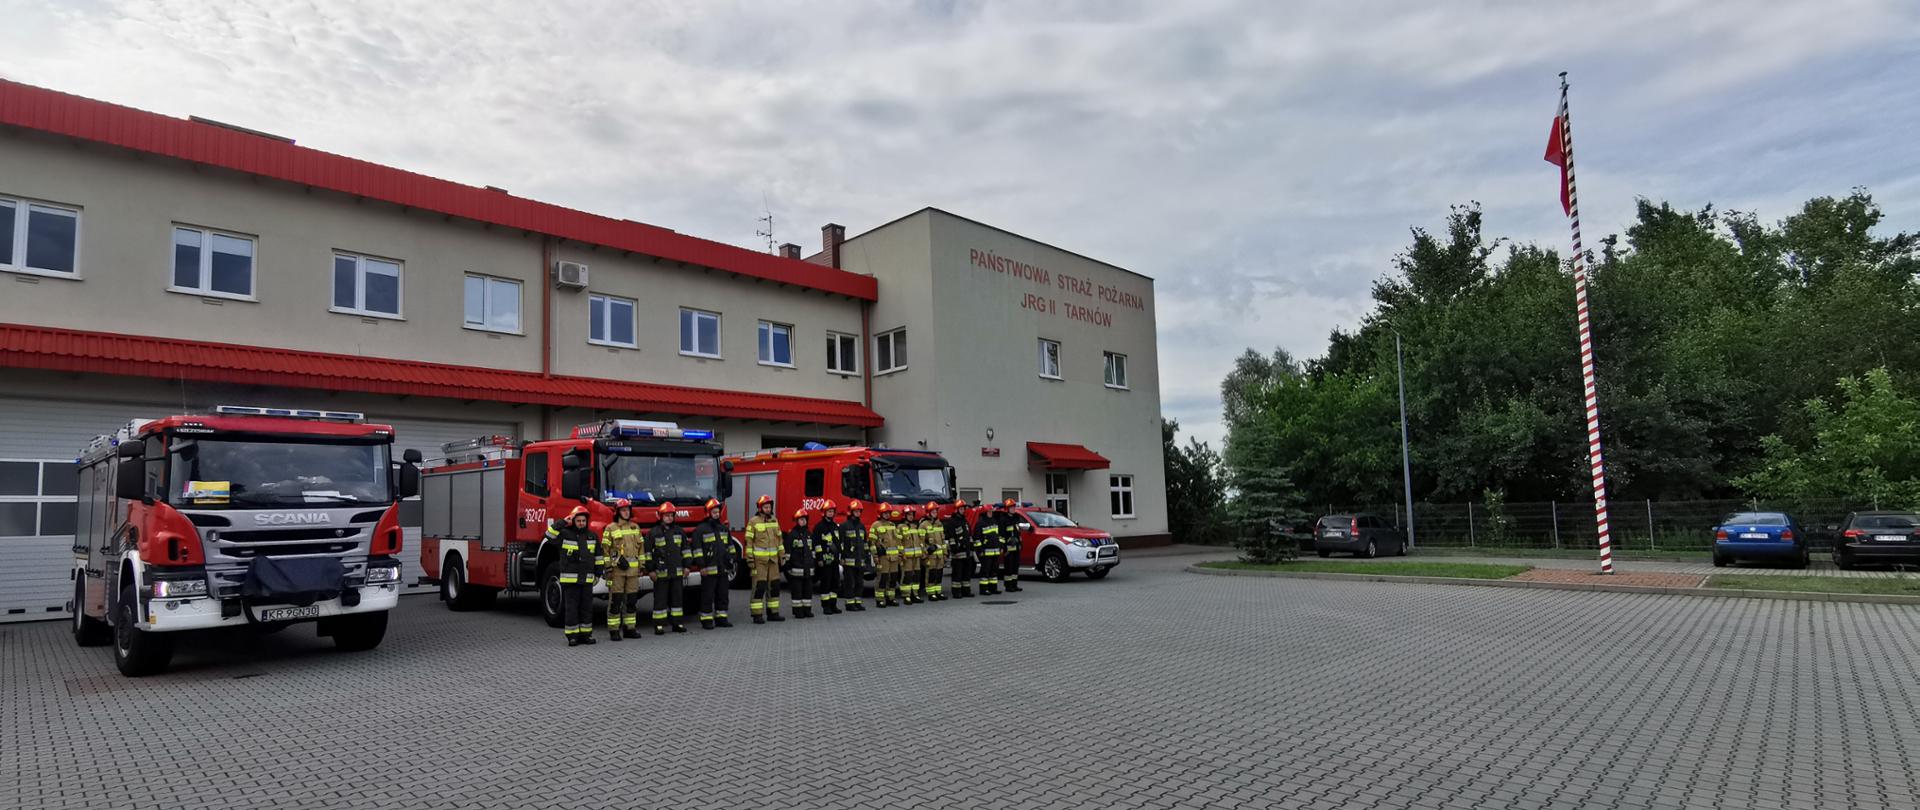 Na zdjęciu widać strażaków na tle 4 samochodów ratowniczo gaśniczych z włączonymi sygnałami ratowniczo gaśniczymi. Samochody ustawione są na tle budynku JRG Nr 2 KM PSP w Tarnowie. Budynek dwukondygnacyjny koloru żółtego z czerwonym dachem.